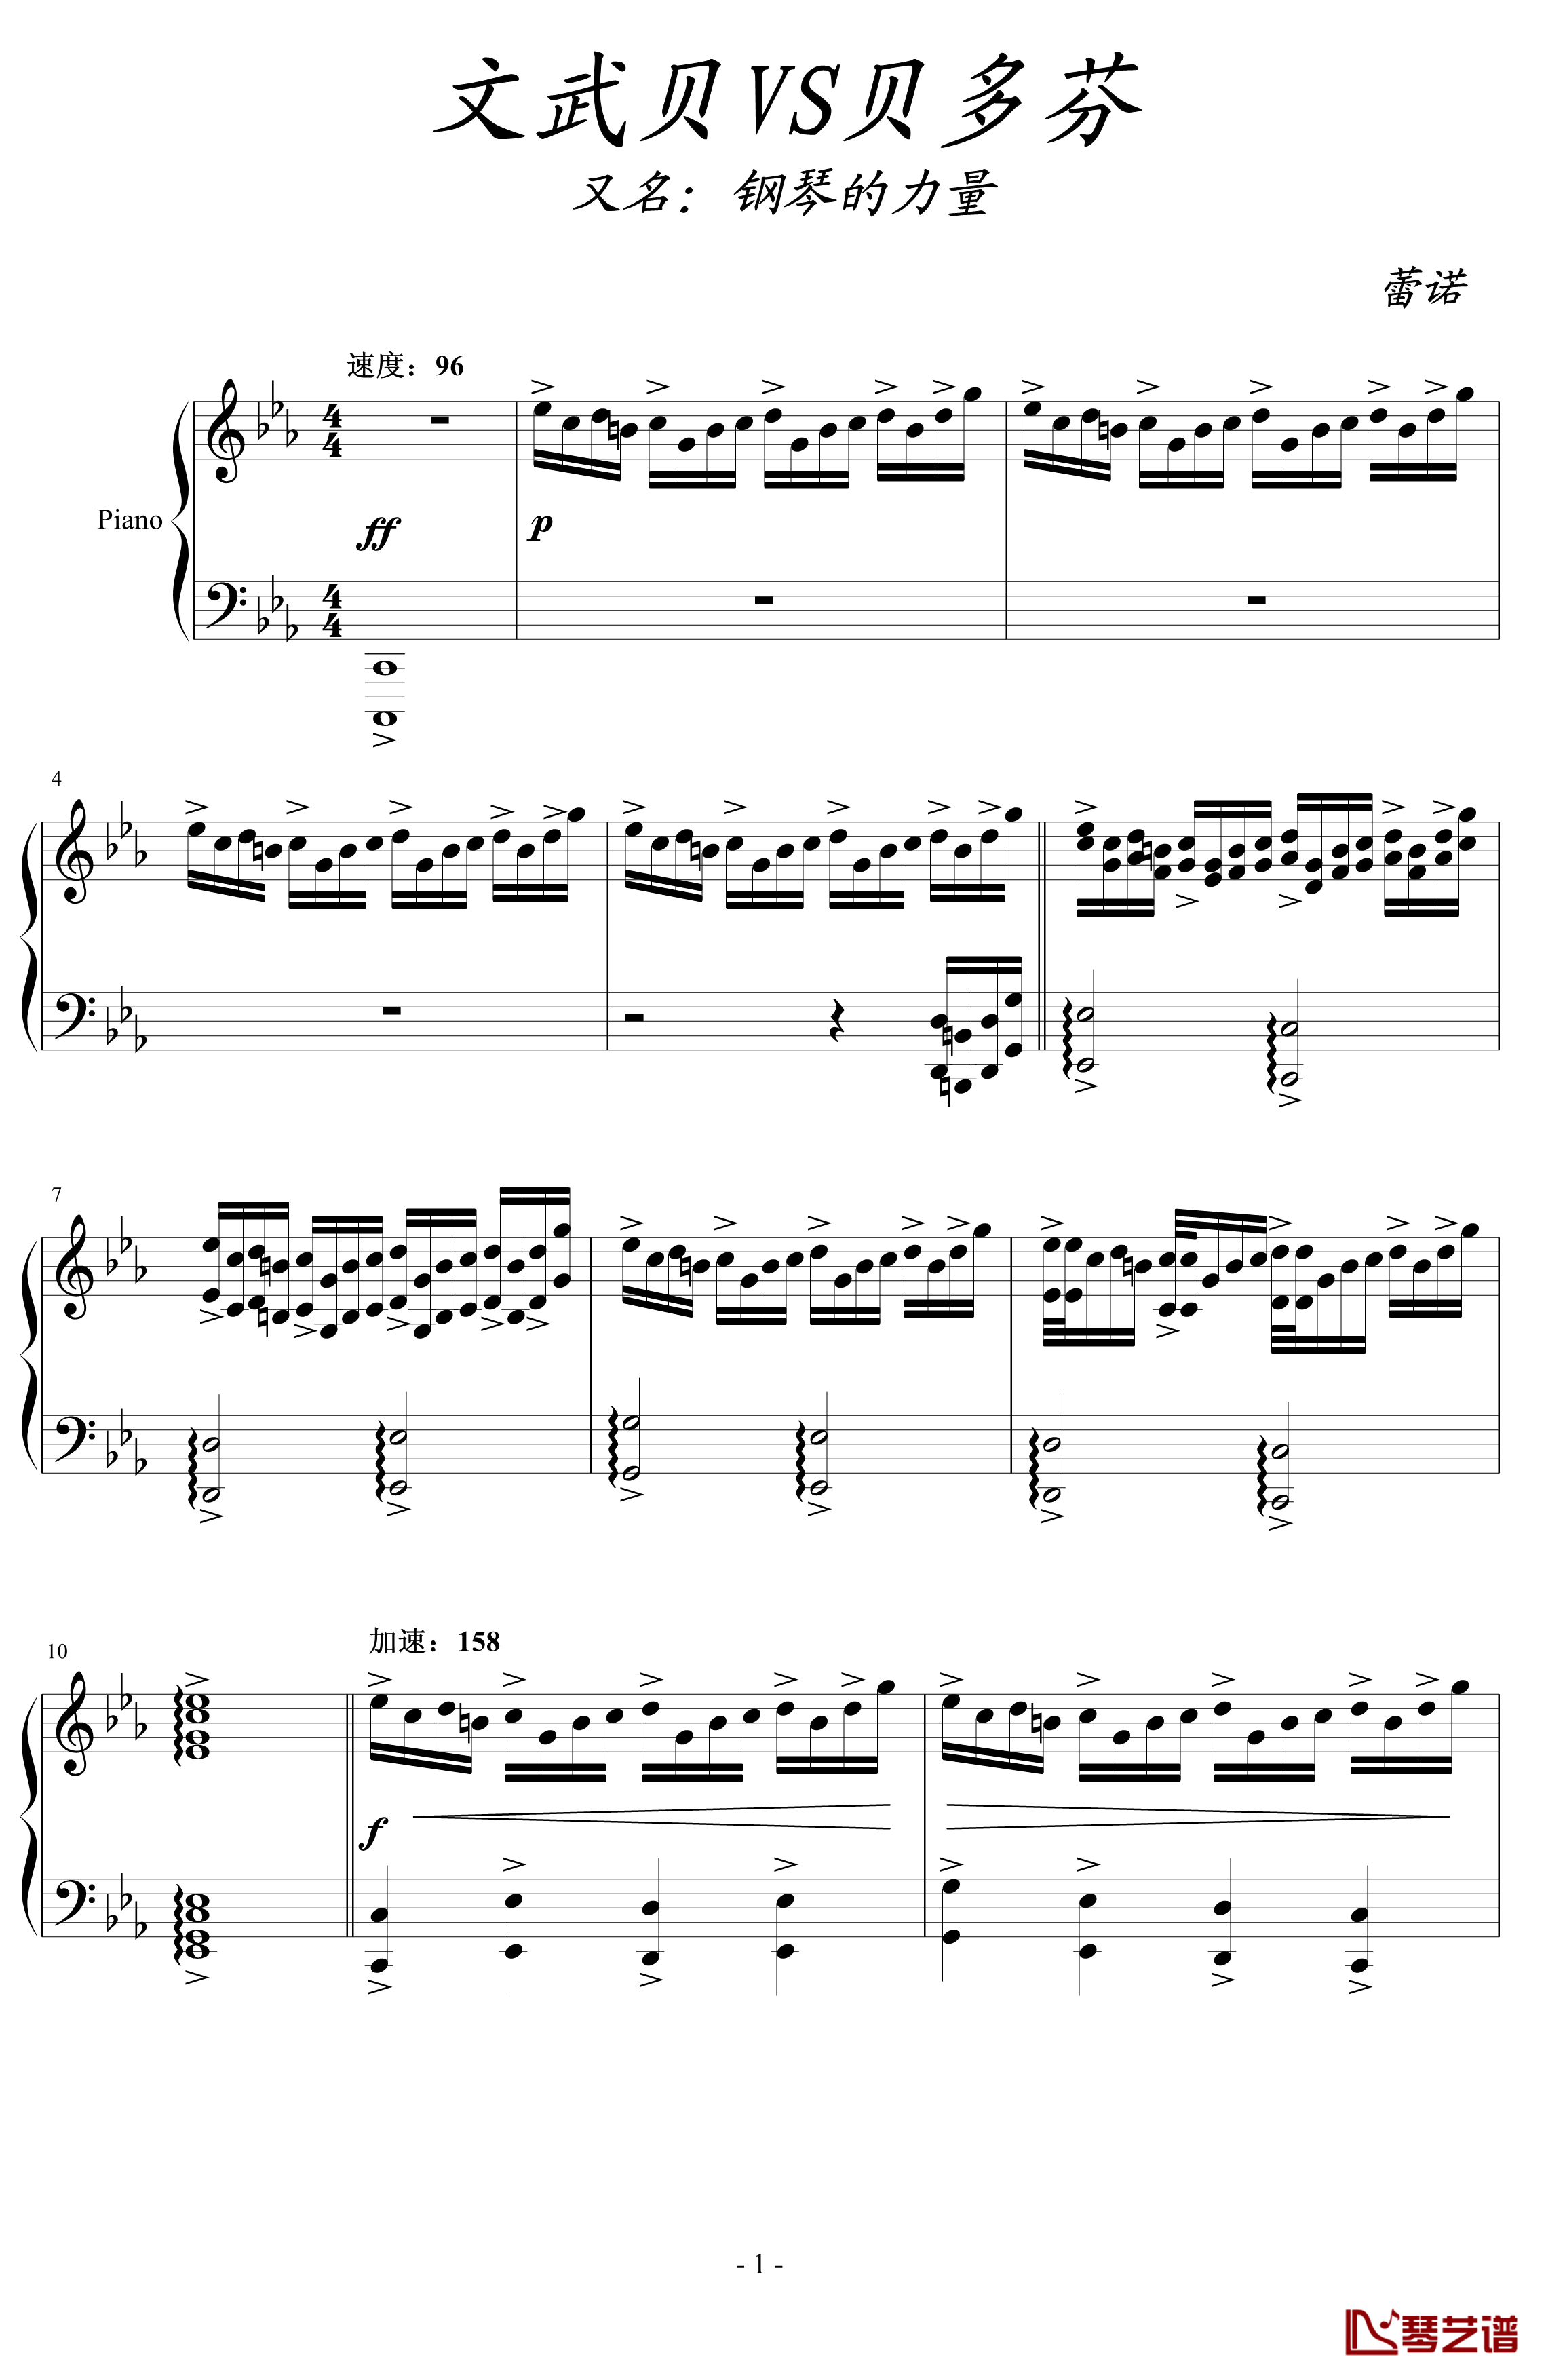 文武贝vs贝多芬钢琴谱-瞎闹版-蕾诺丝1